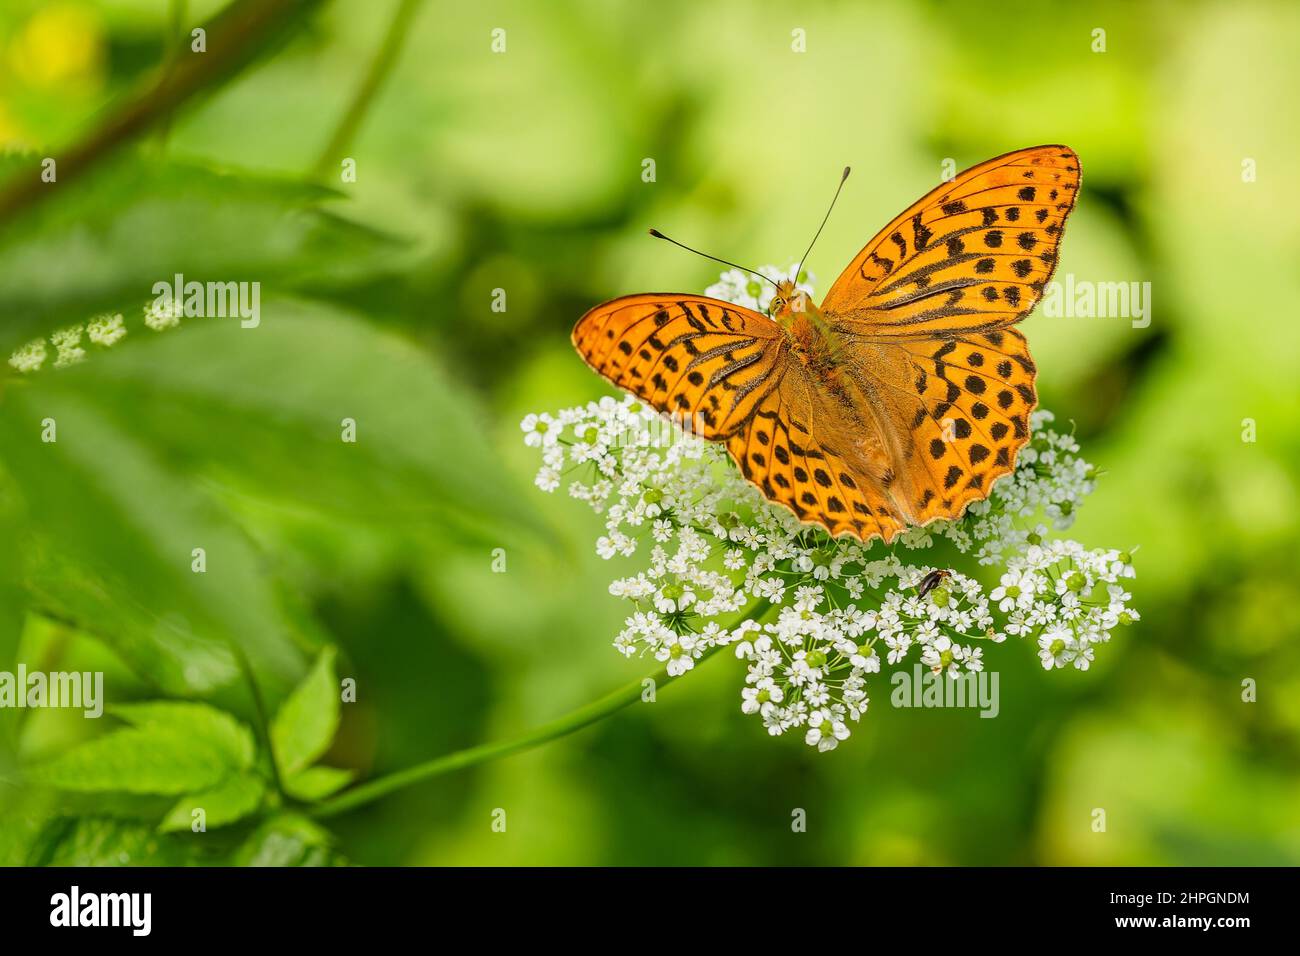 Silbergewaschene Fritillary, ein orangefarbener und schwarzer Schmetterling, sitzt auf einer weißen Blume, die in der Natur wächst. Sommertag. Verschwommener Hintergrund mit grünen Blättern. Stockfoto